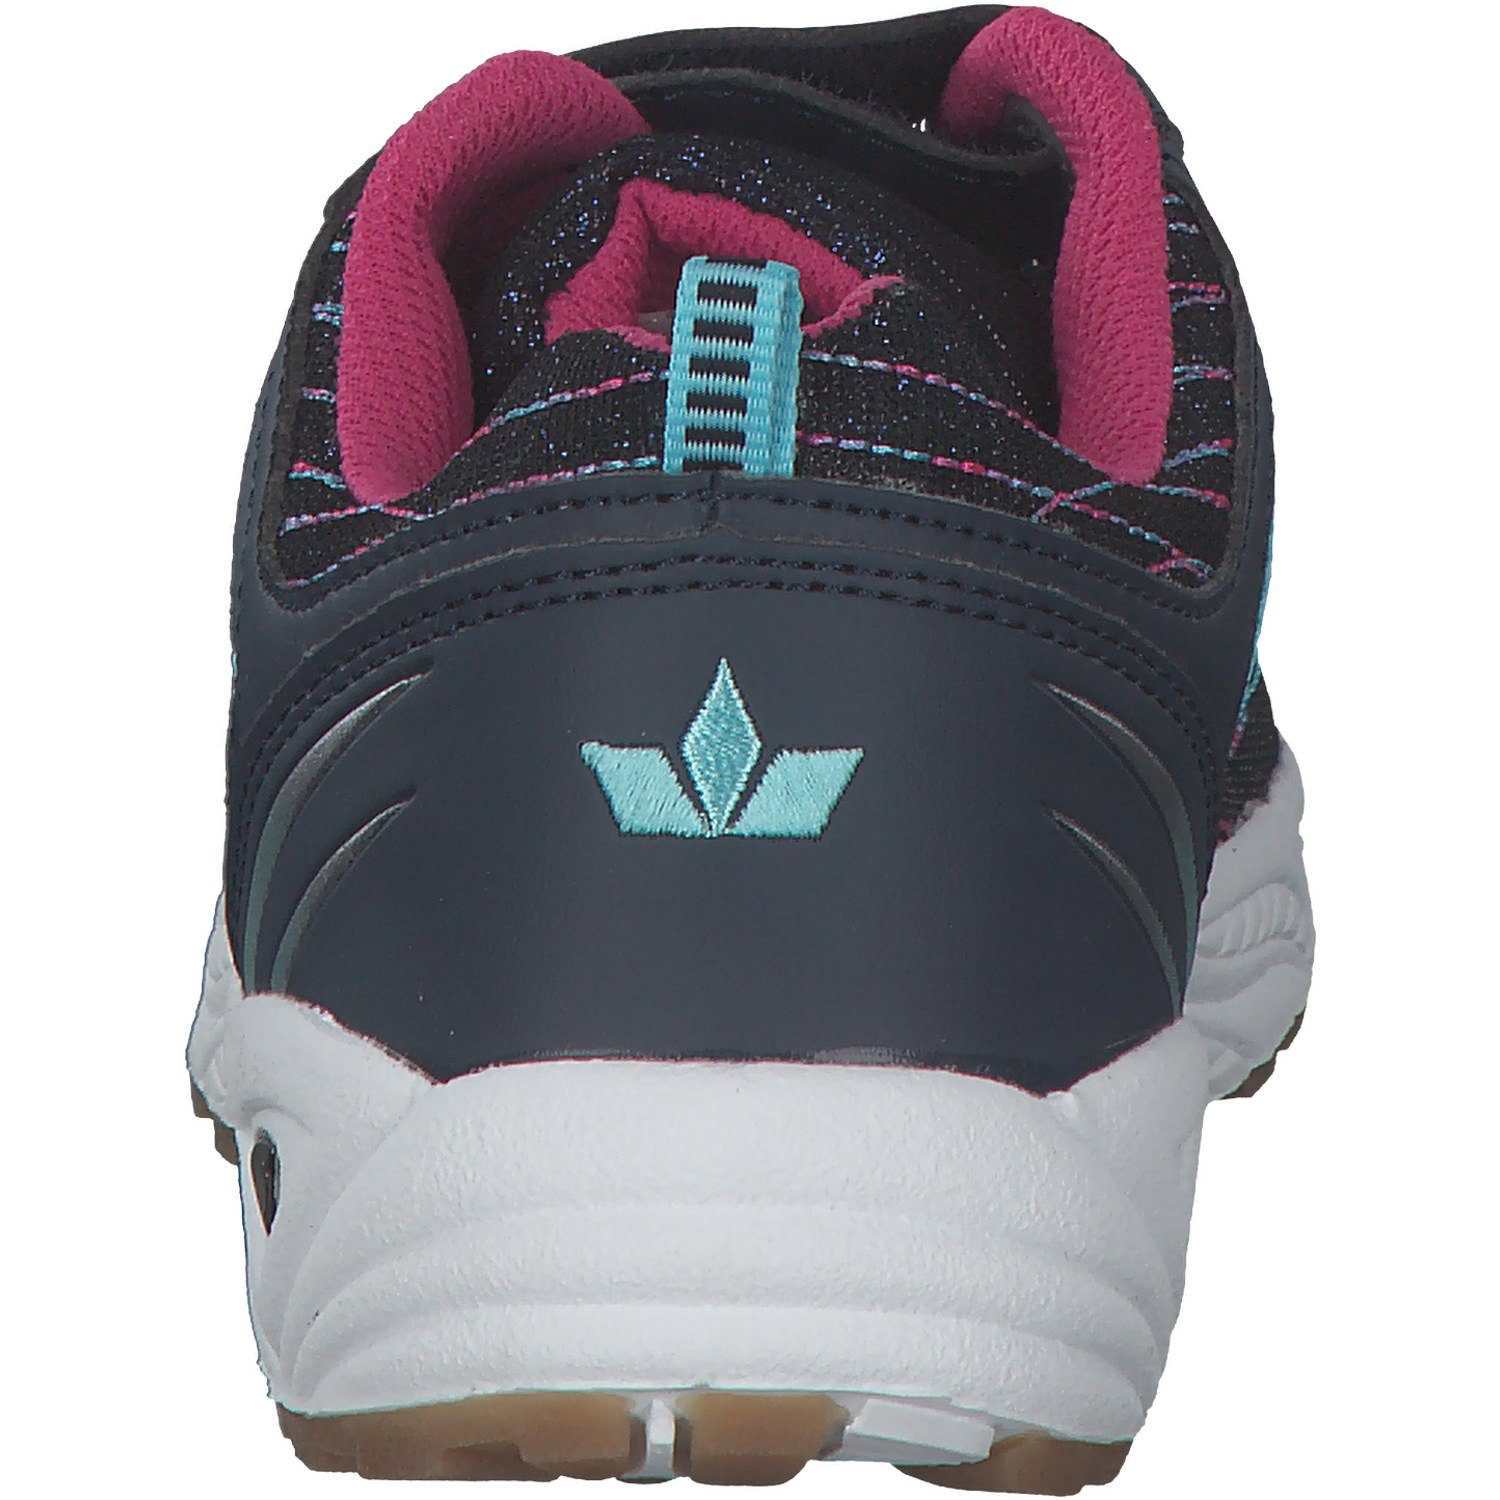 GEKA Geka Barney VS (06501116) W marine/pink/tUErkis Sneaker